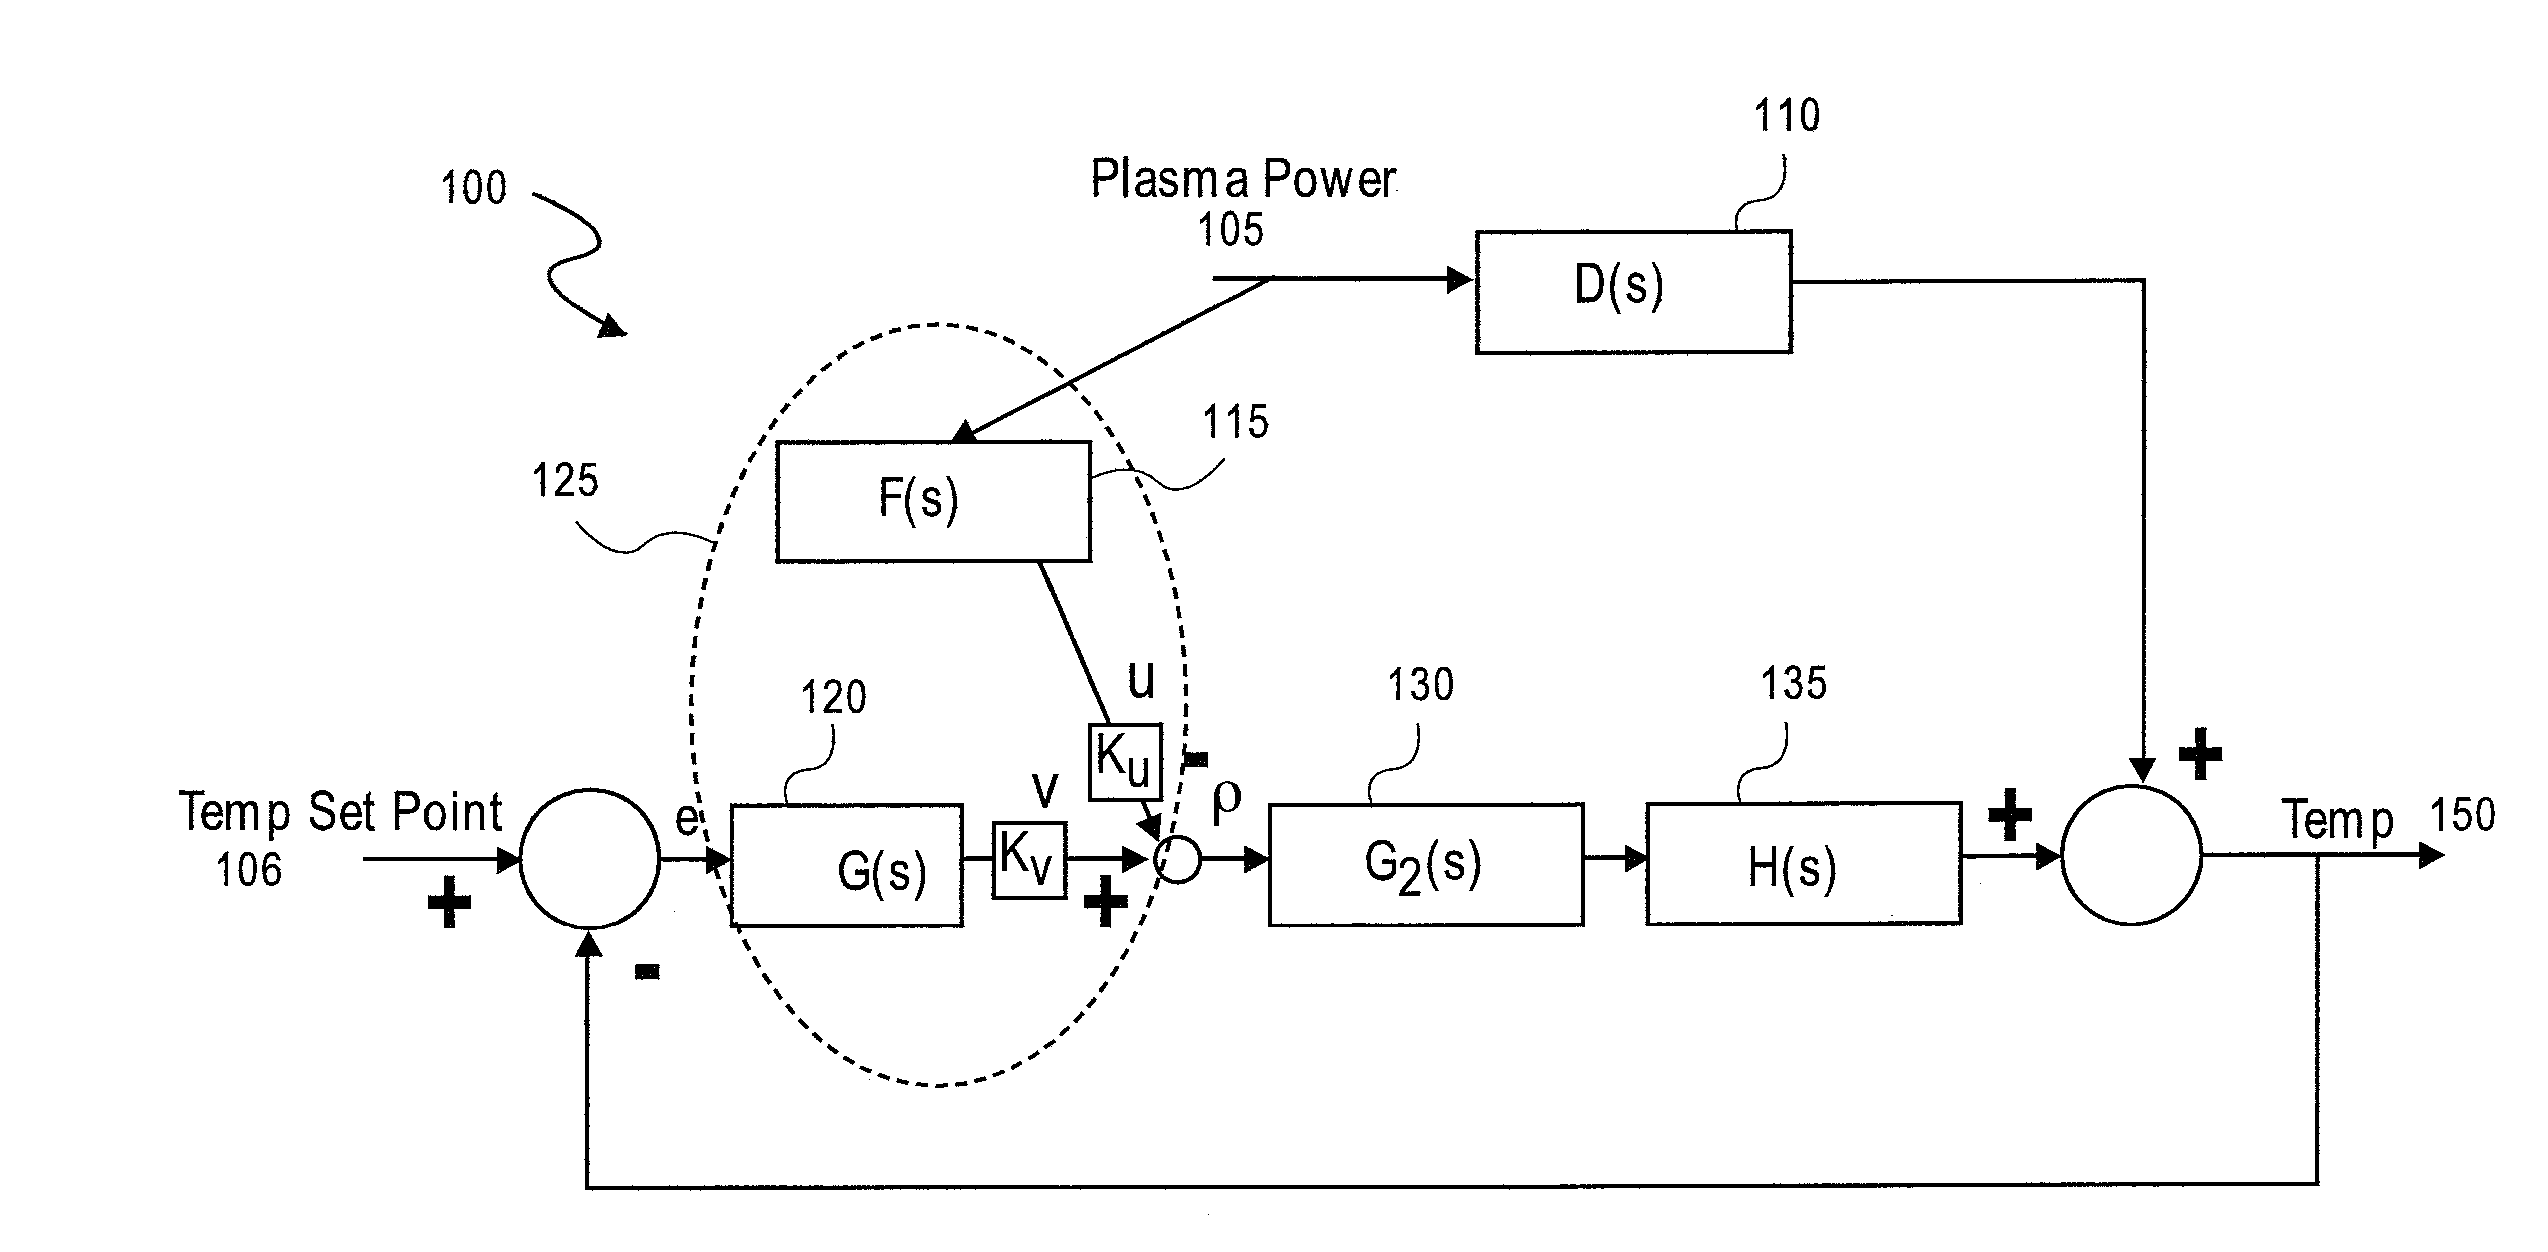 Temperature control in plasma processing apparatus using pulsed heat transfer fluid flow